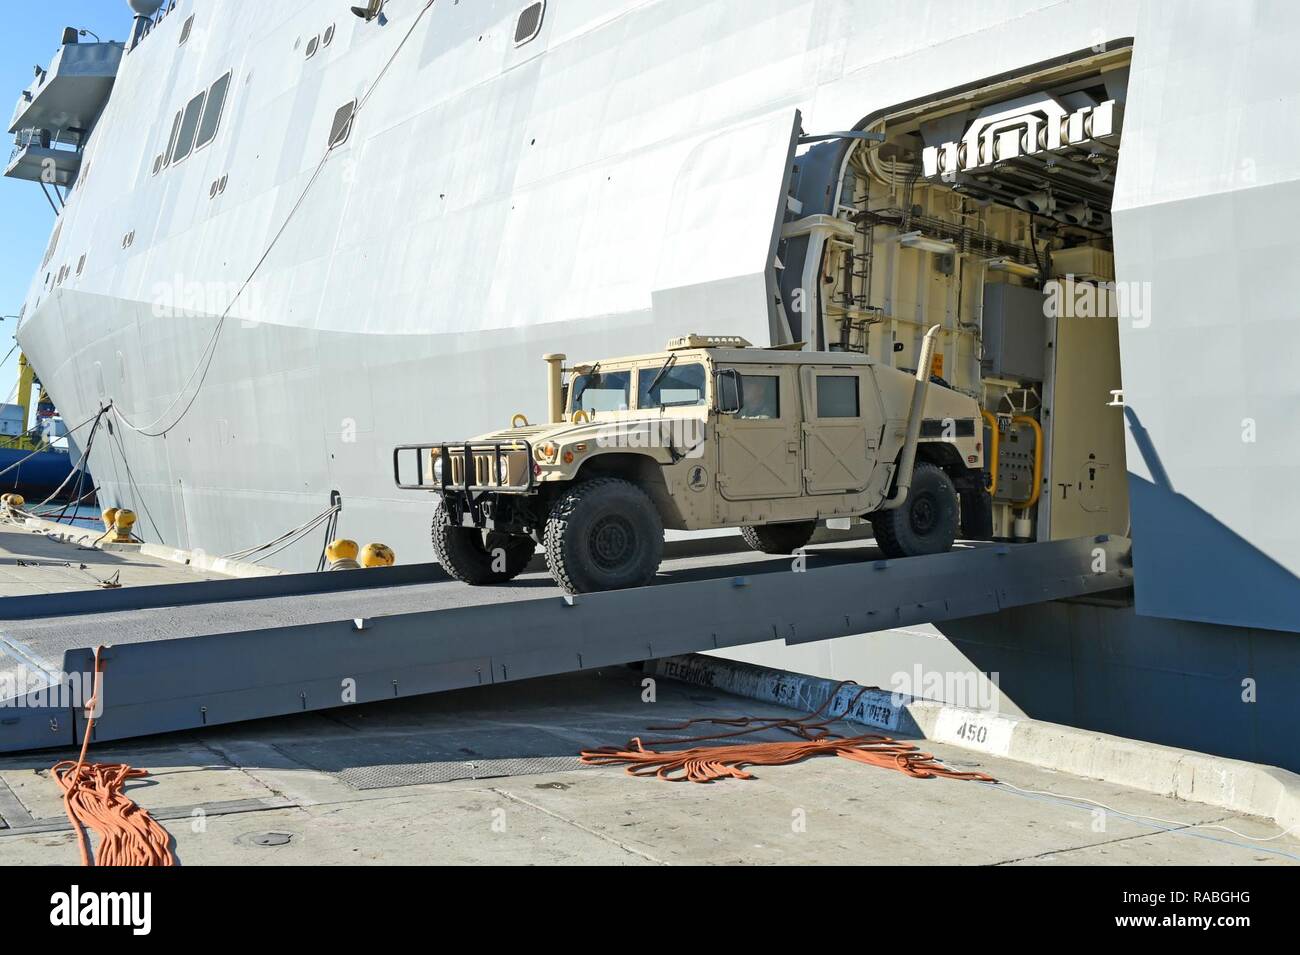 PORT HUENEME, California (Gen. 26, 2017) - Un Seabee assegnato alla Naval Mobile Battaglione di costruzione (NMCB) 4, aziona un Humvee fuori il trasporto anfibio dock nave USS San Diego (LPD 22) durante il caricamento di esercizio (LOADEX), 26 genn. Il LOADEX è progettato per la formazione di marinai con risposta rapida funzionalità per supportare gli sforzi di recupero e di assistere le autorità locali seguenti catastrofi naturali e provocate dall'uomo. Foto Stock